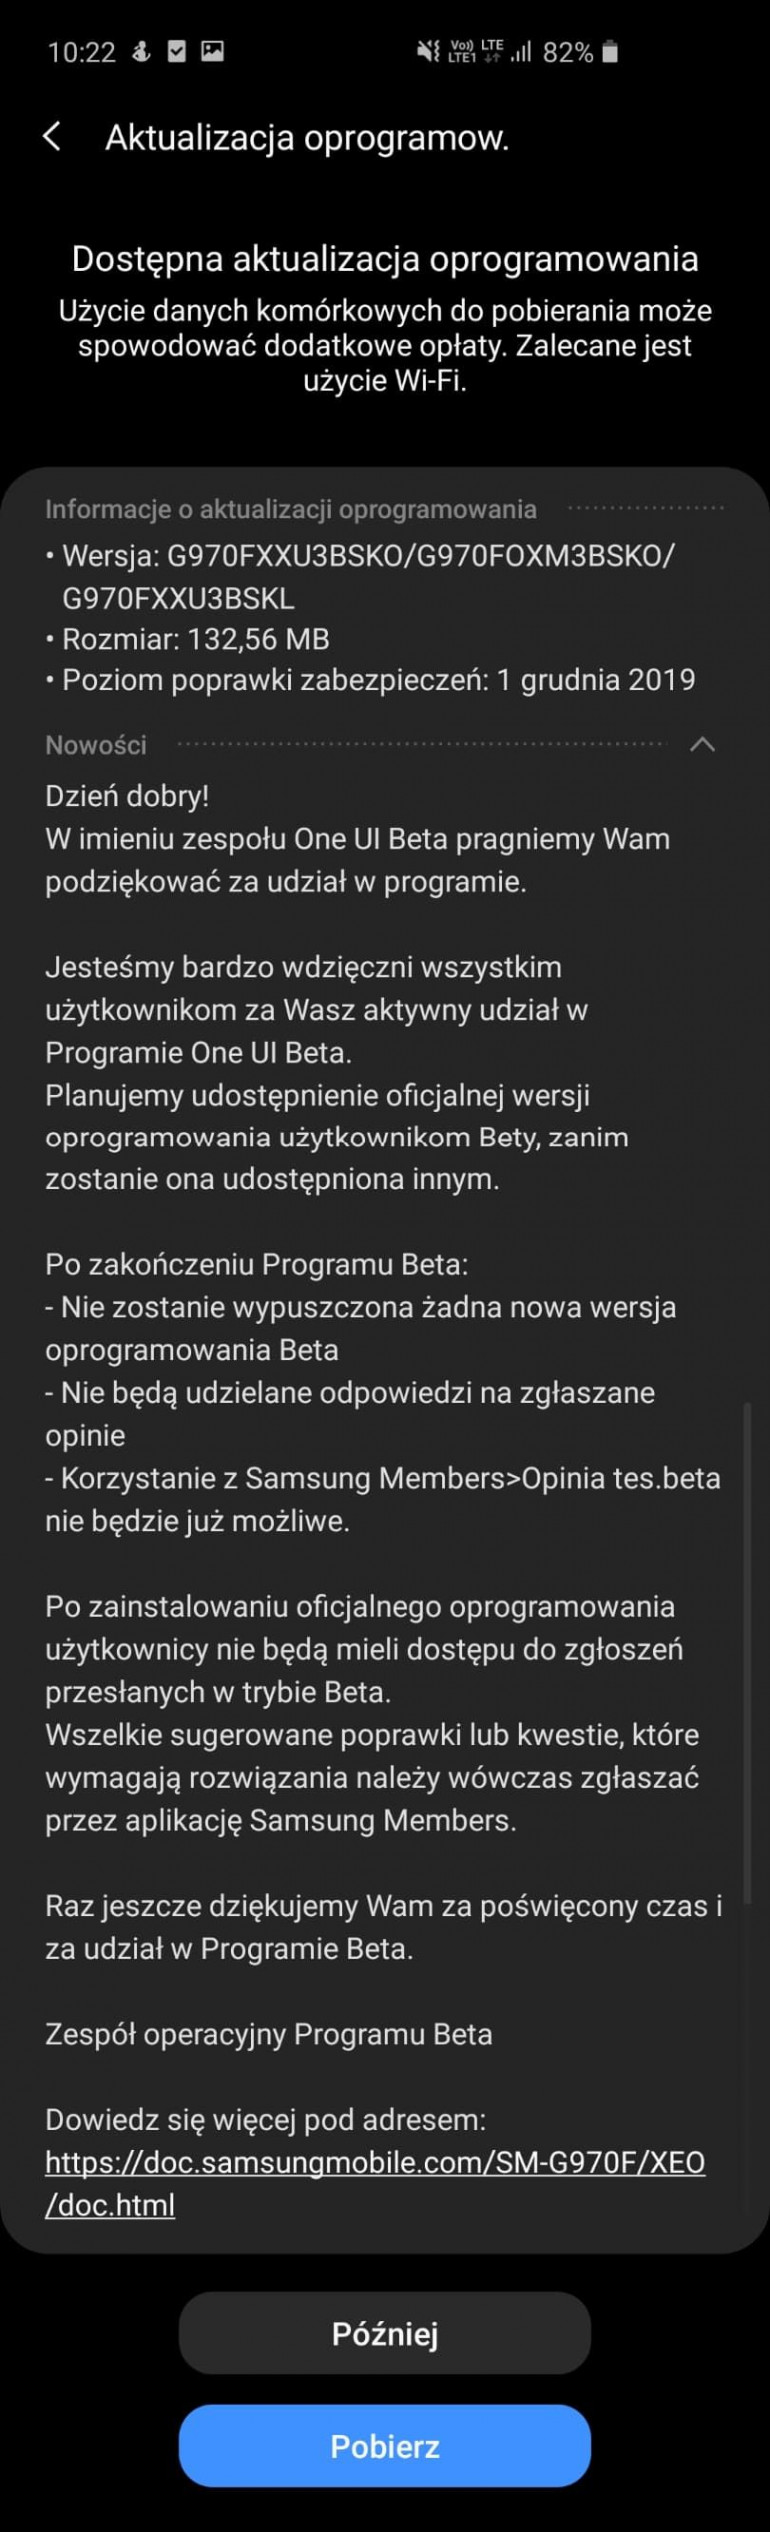 Samsung закрывает бета-программу для Galaxy S10